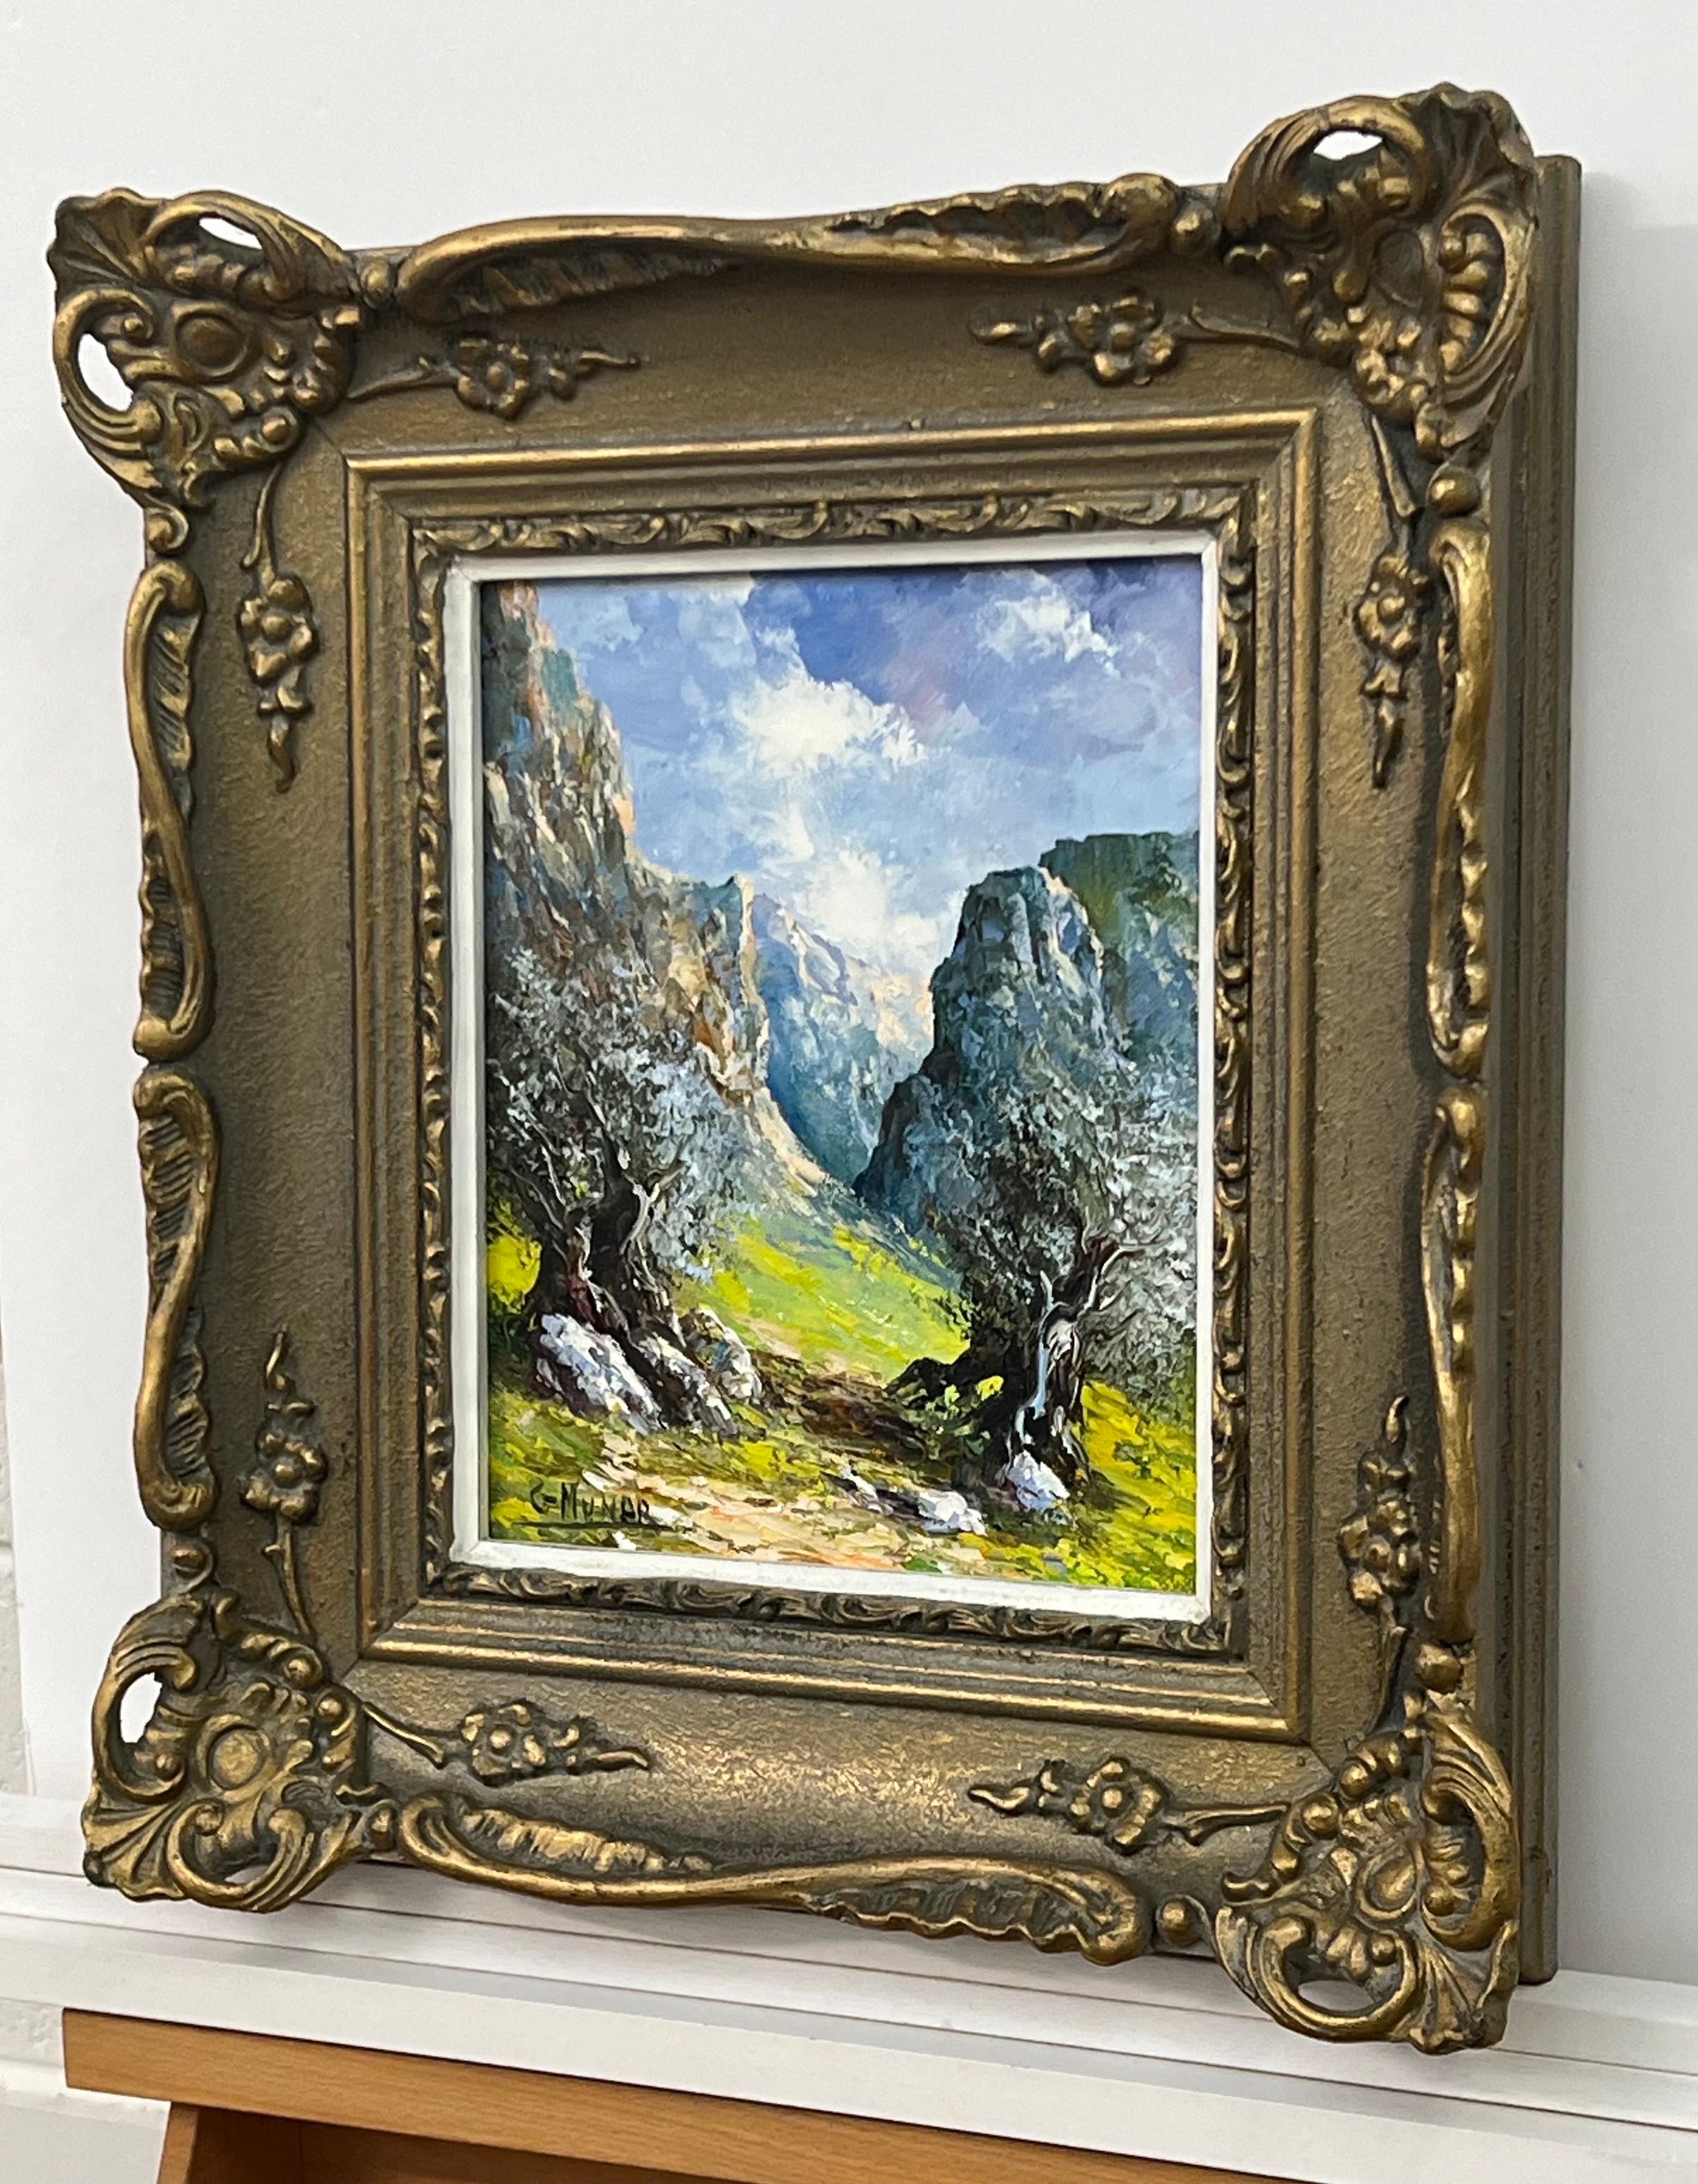 Montagnes en Espagne, huile originale colorée de l'artiste de l'école espagnole du 20e siècle, G Munar 

L'œuvre d'art mesure 11 x 9 pouces 
Le cadre mesure 17 x 15 pouces 

Présenté dans un cadre orné d'époque 
